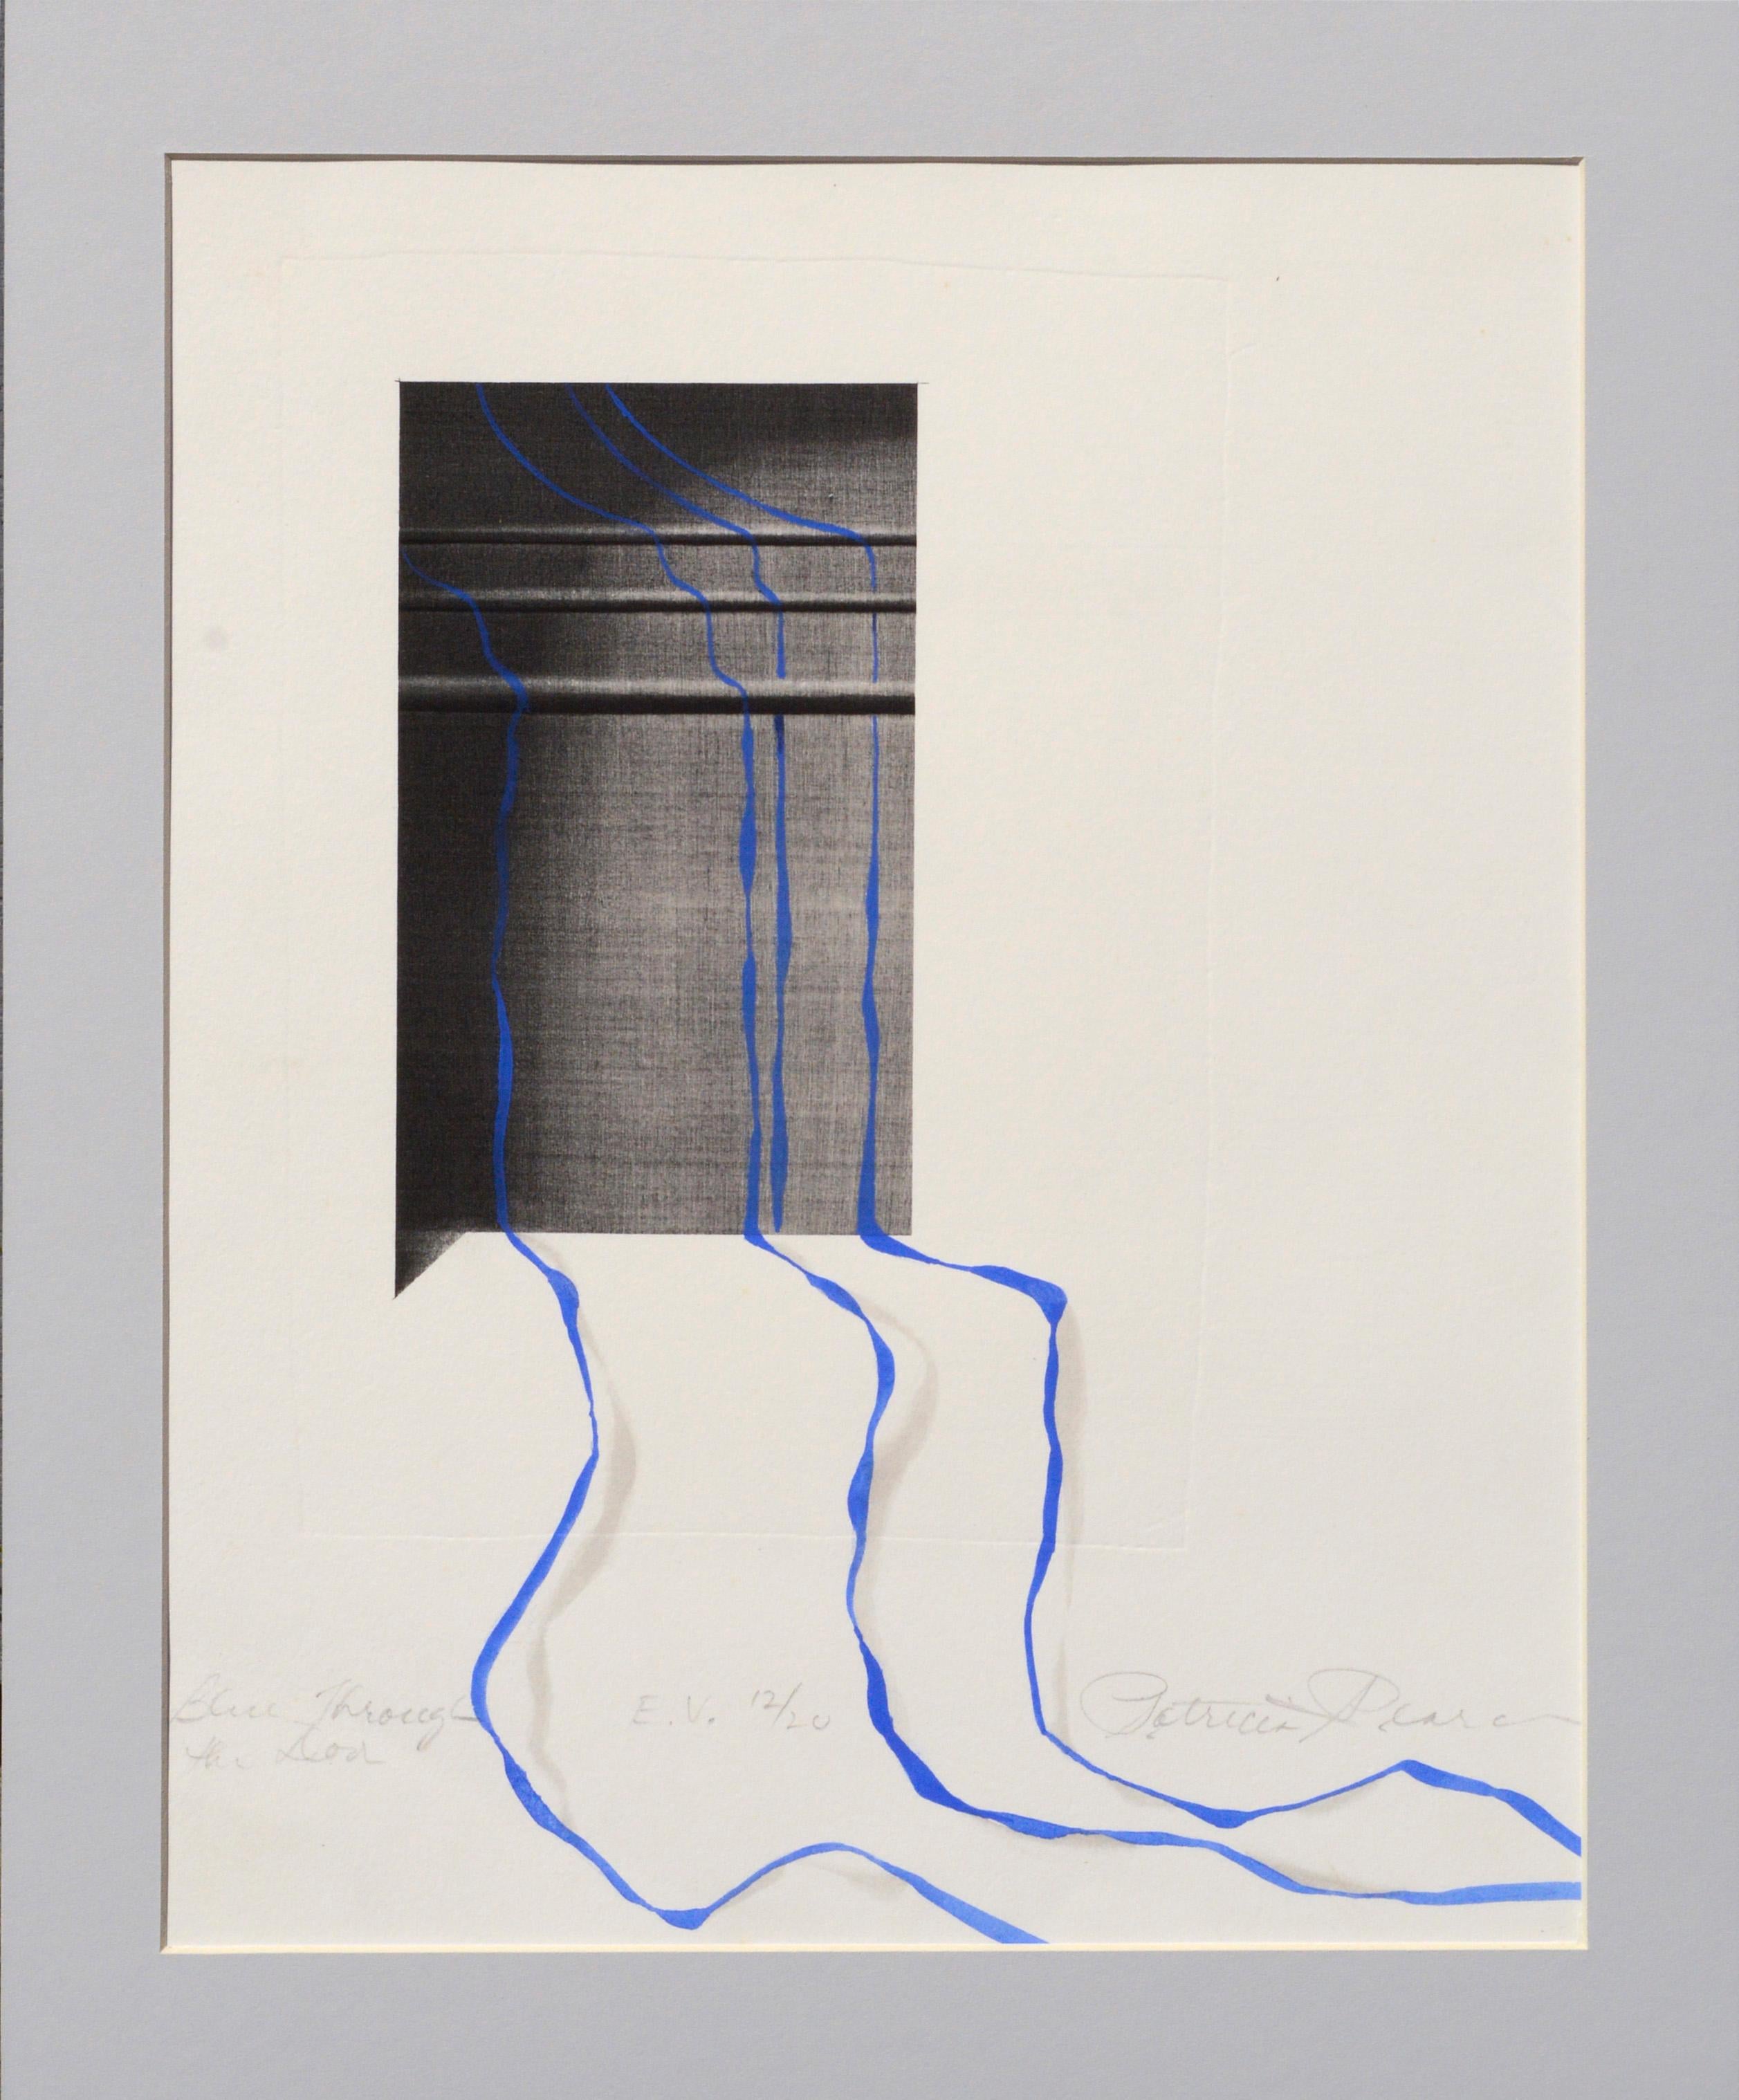 Abstract Print Patricia A Pearce - « Bleu à travers la porte » - Lithographie altérée à la main